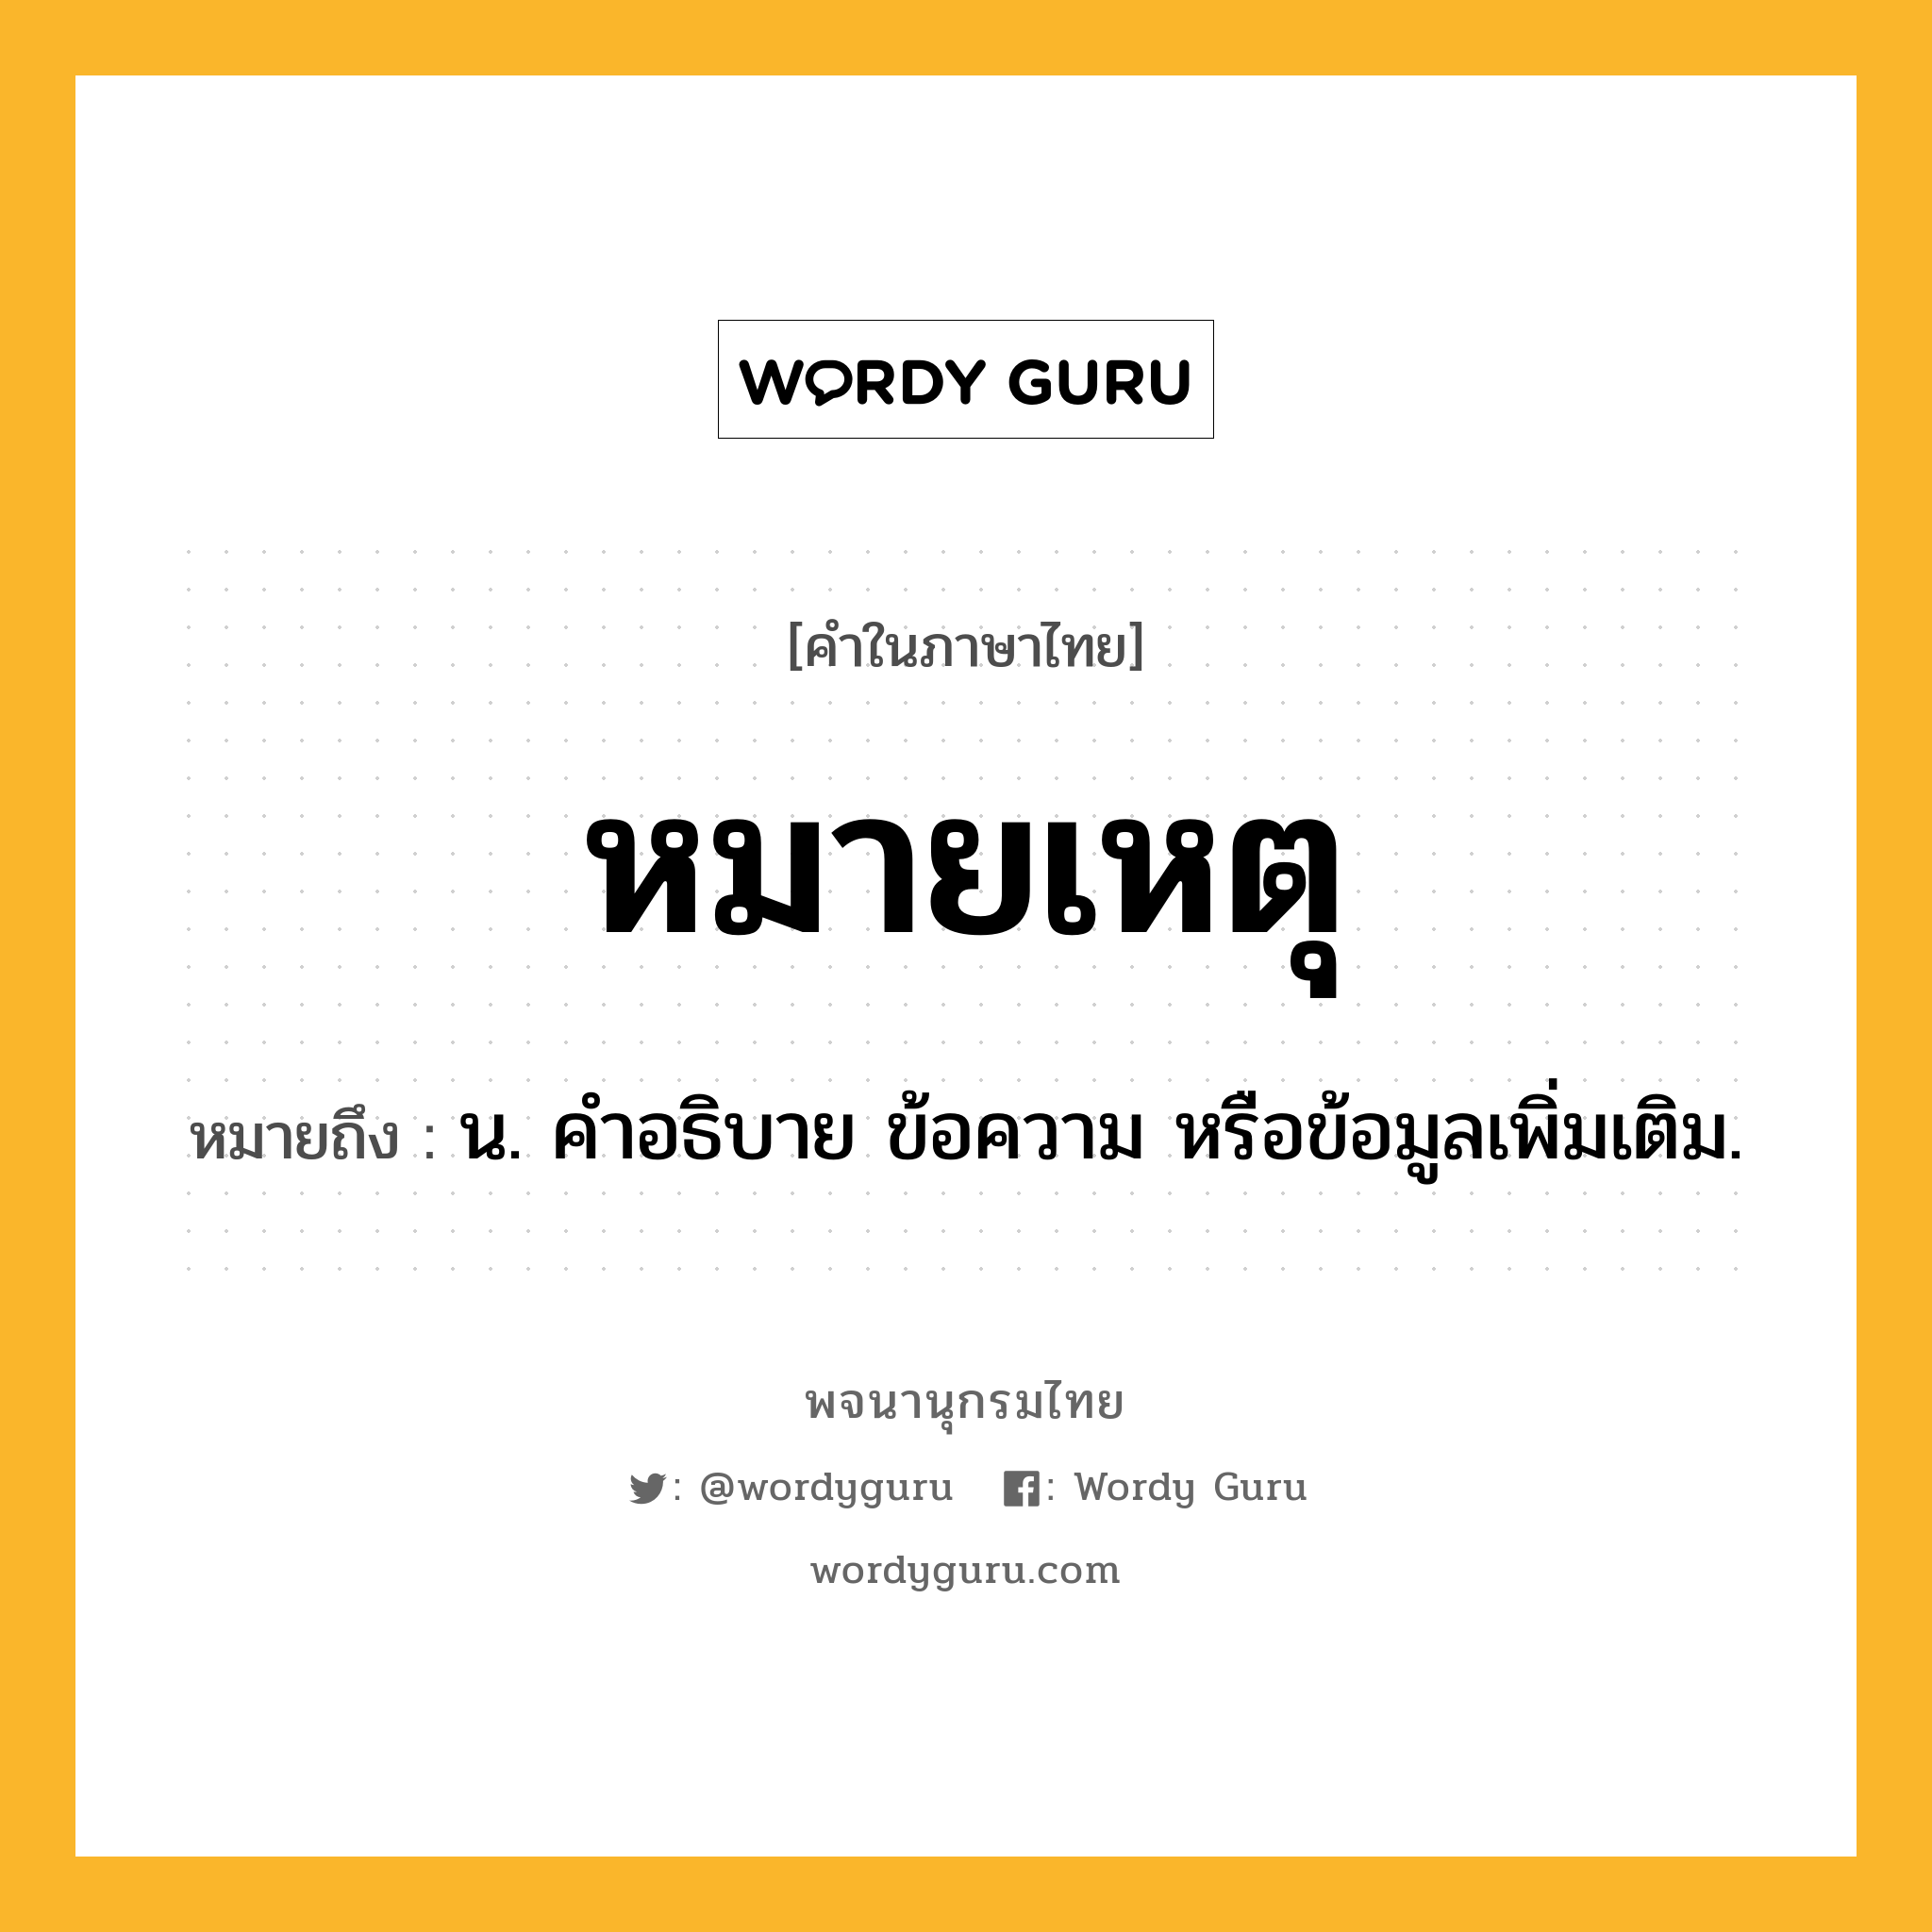 หมายเหตุ ความหมาย หมายถึงอะไร?, คำในภาษาไทย หมายเหตุ หมายถึง น. คำอธิบาย ข้อความ หรือข้อมูลเพิ่มเติม.